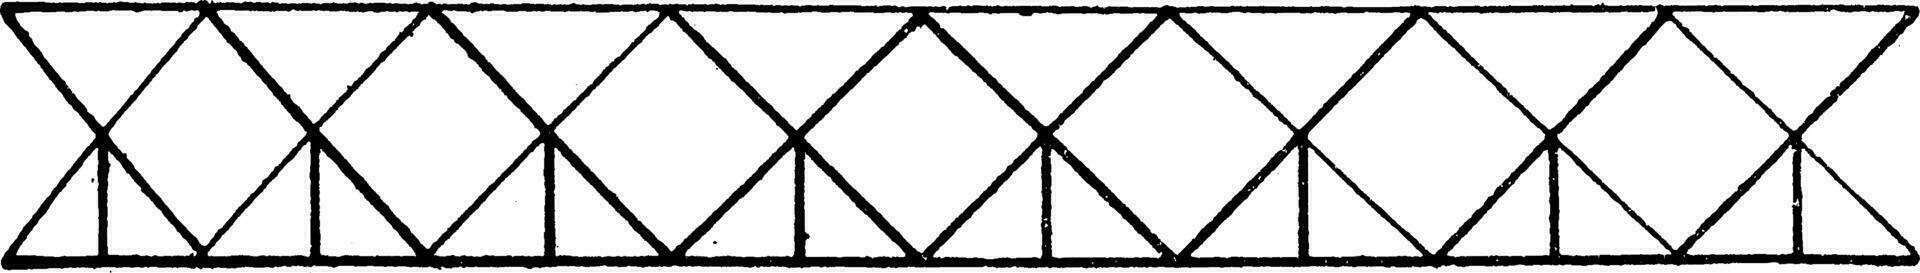 driehoekig systeem Bij Rechtsaf hoeken manier omlaag, wijnoogst gravure. vector